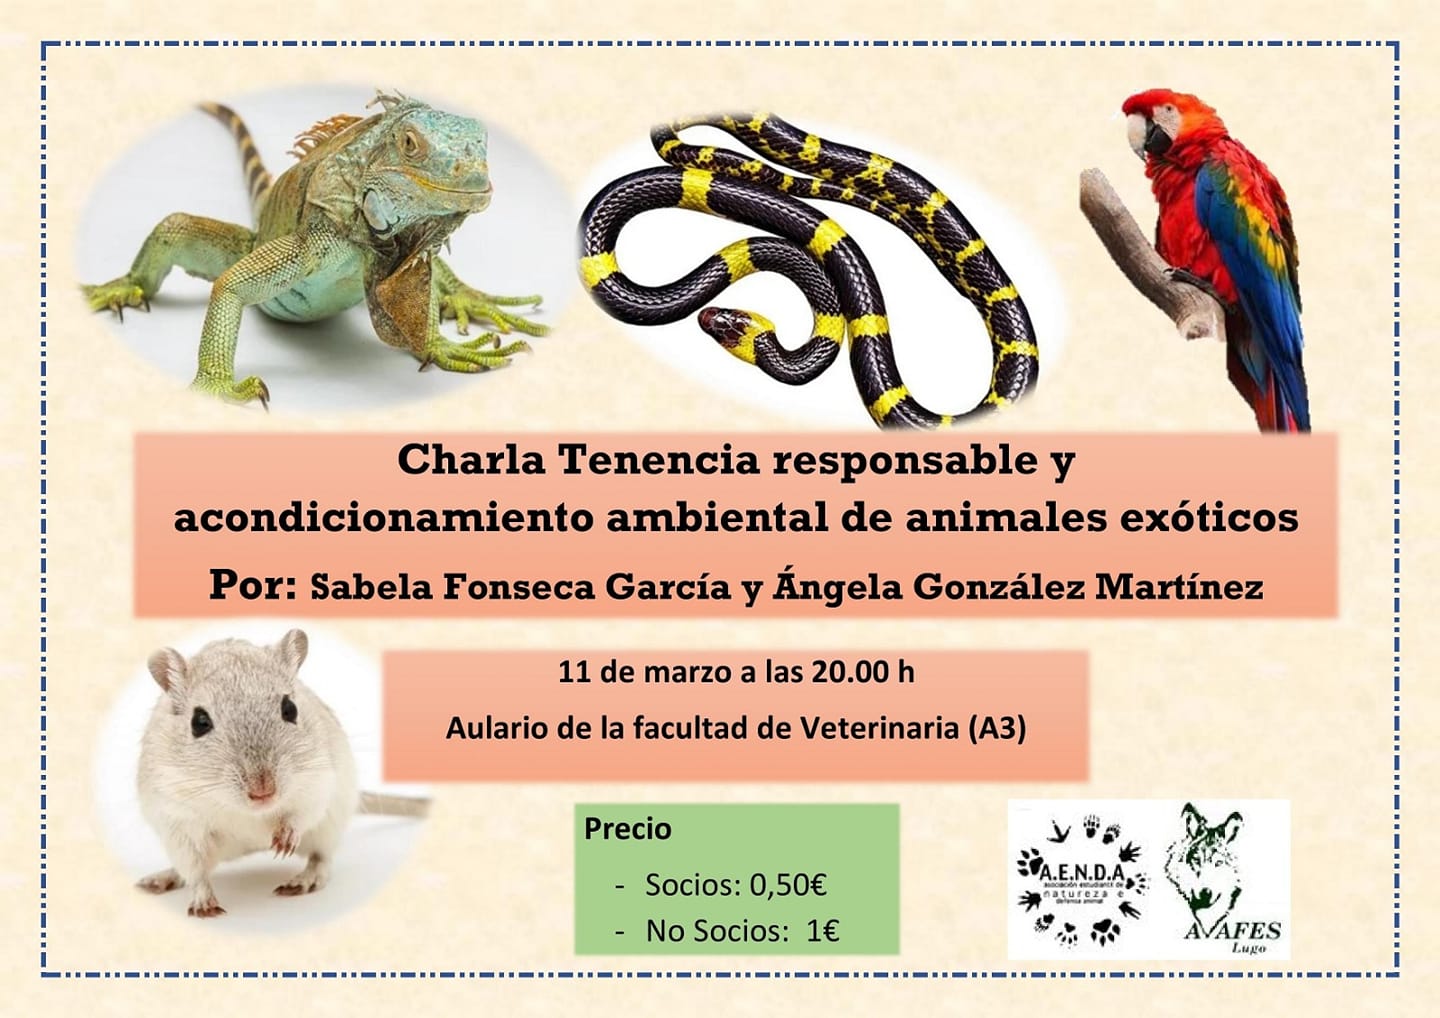 Cartel da Charla: tenencia de animales exóticos